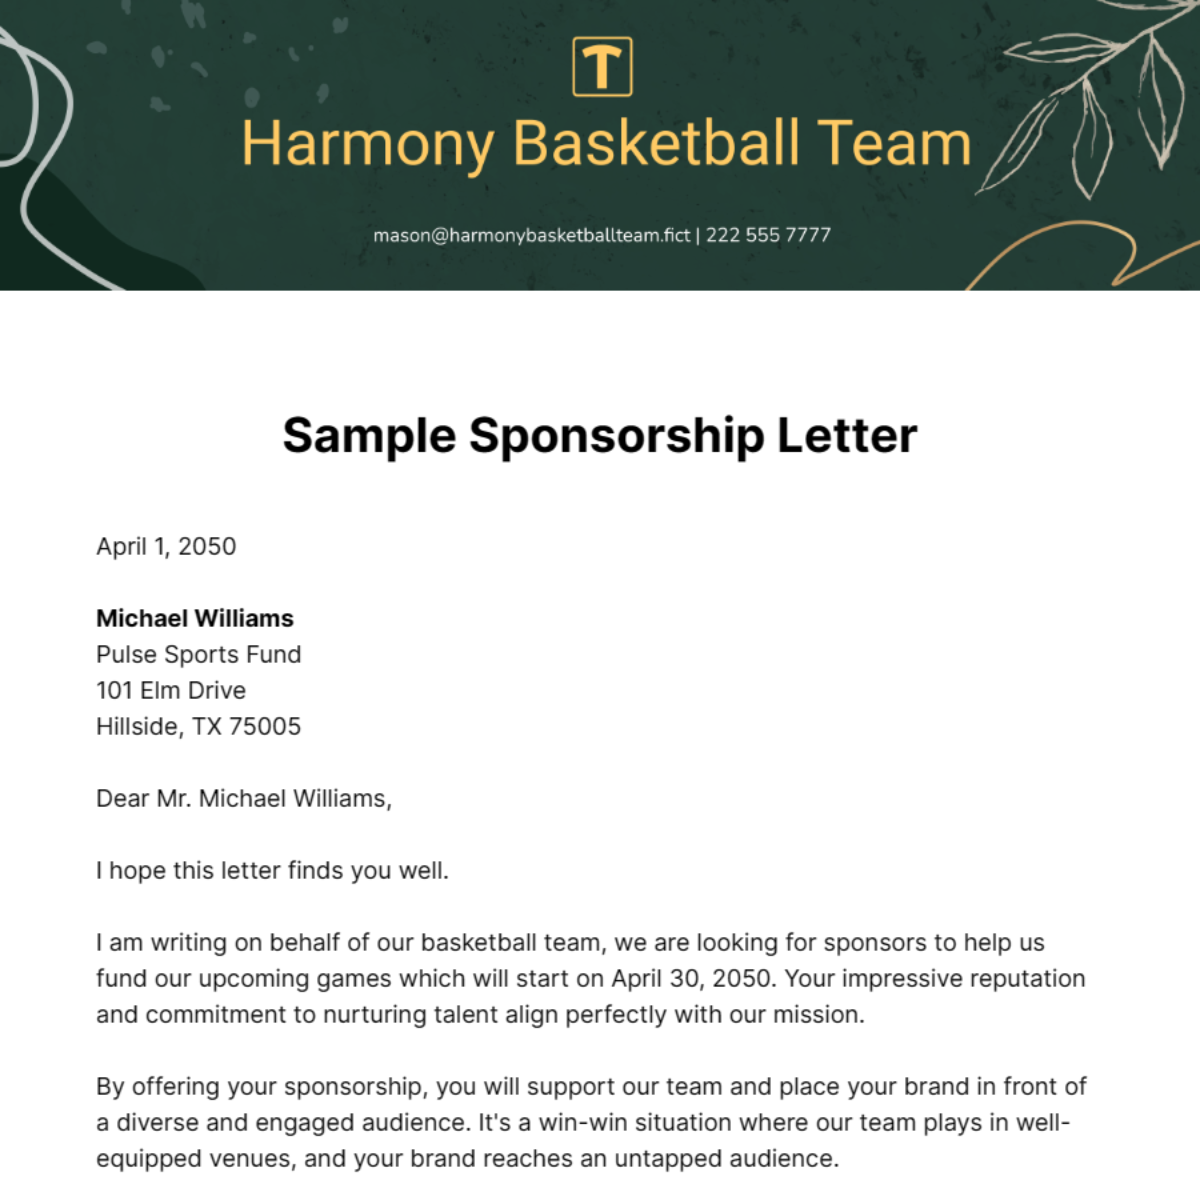 Sample Sponsorship Letter Template